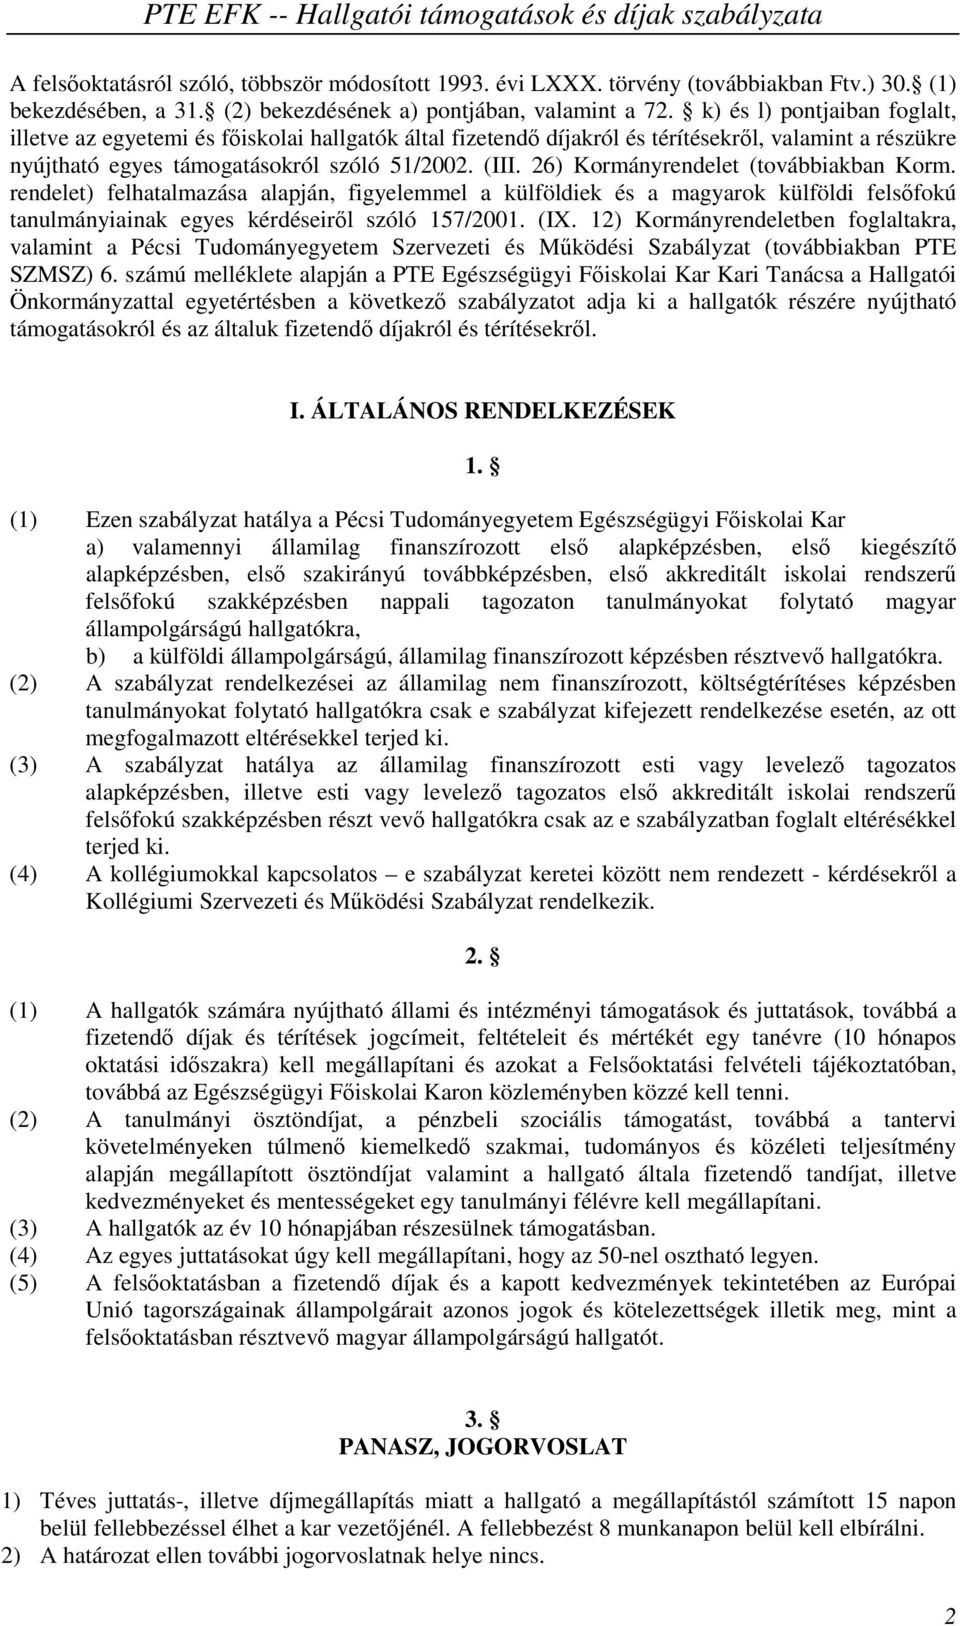 26) Kormányrendelet (továbbiakban Korm. rendelet) felhatalmazása alapján, figyelemmel a külföldiek és a magyarok külföldi felsőfokú tanulmányiainak egyes kérdéseiről szóló 157/2001. (IX.